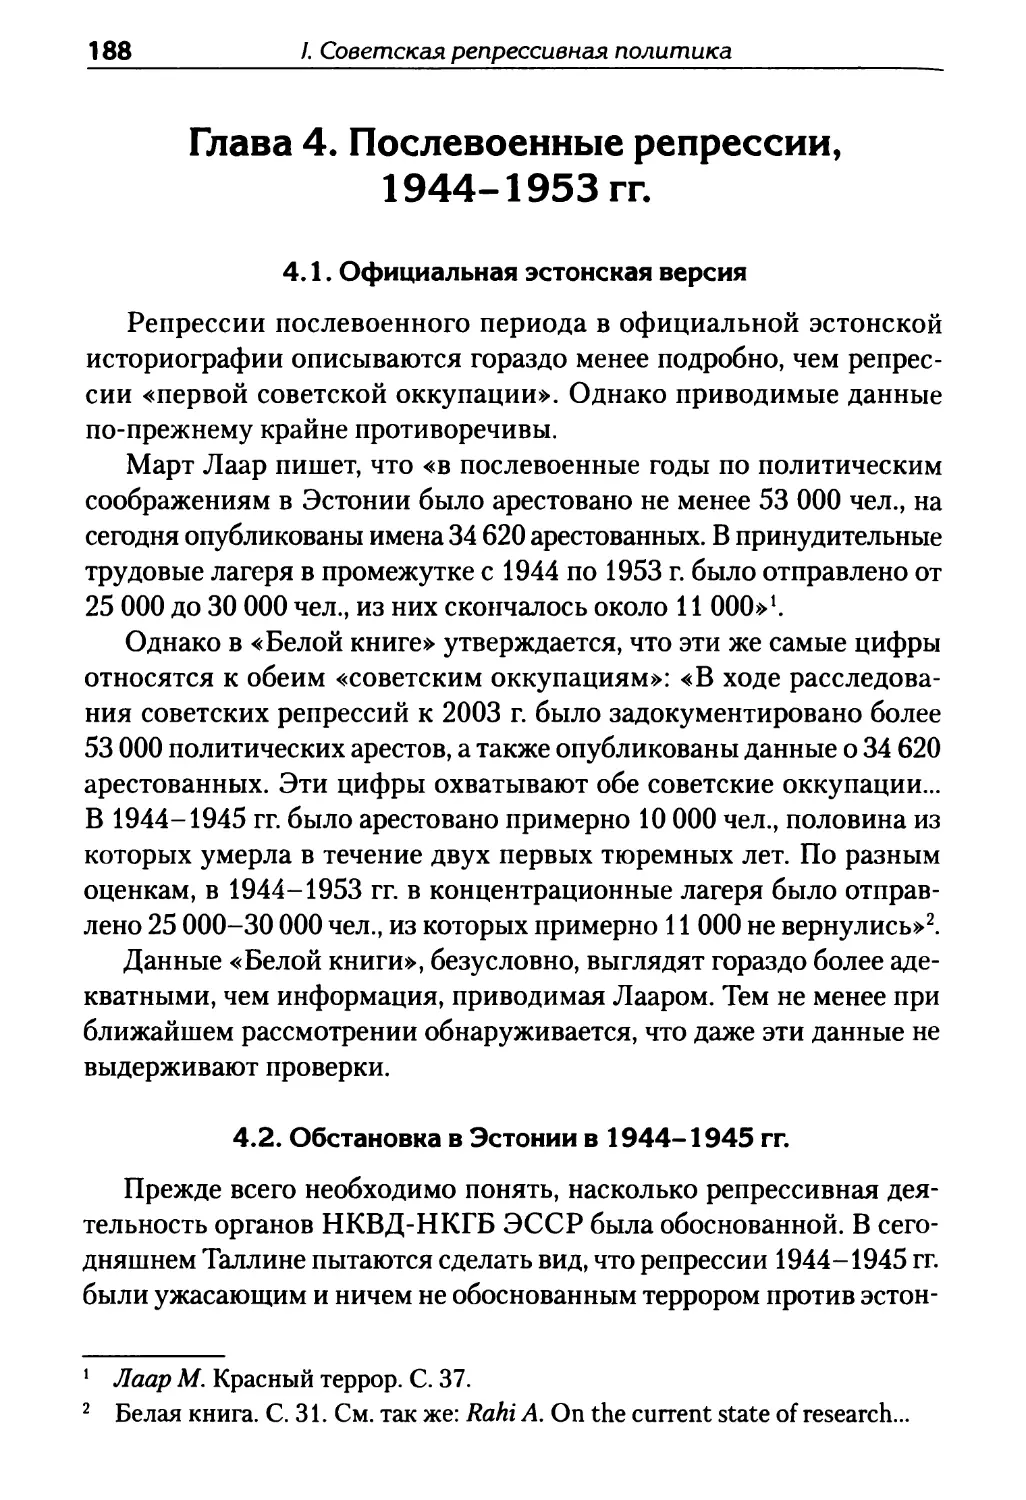 Глава 4. Послевоенные репрессии, 1944-1953 гг